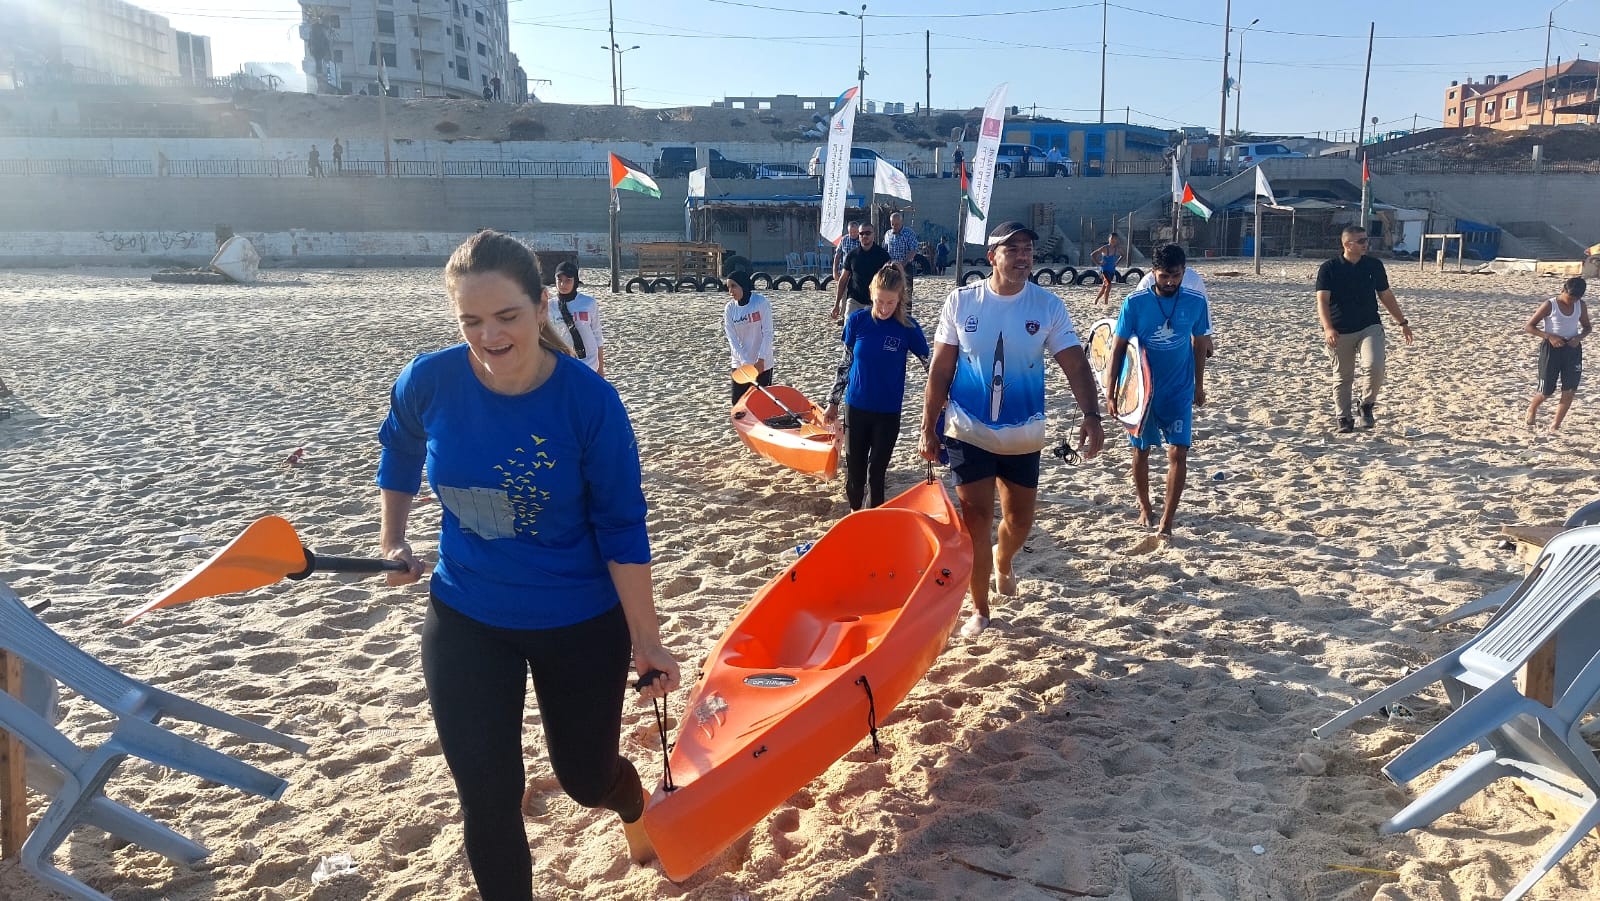 وفد من الاتحاد الأوروبي يمارس رياضة التجديف على شاطئ بحر غزة بدعوة من اتحاد الشراع والتجديف 8.jpg